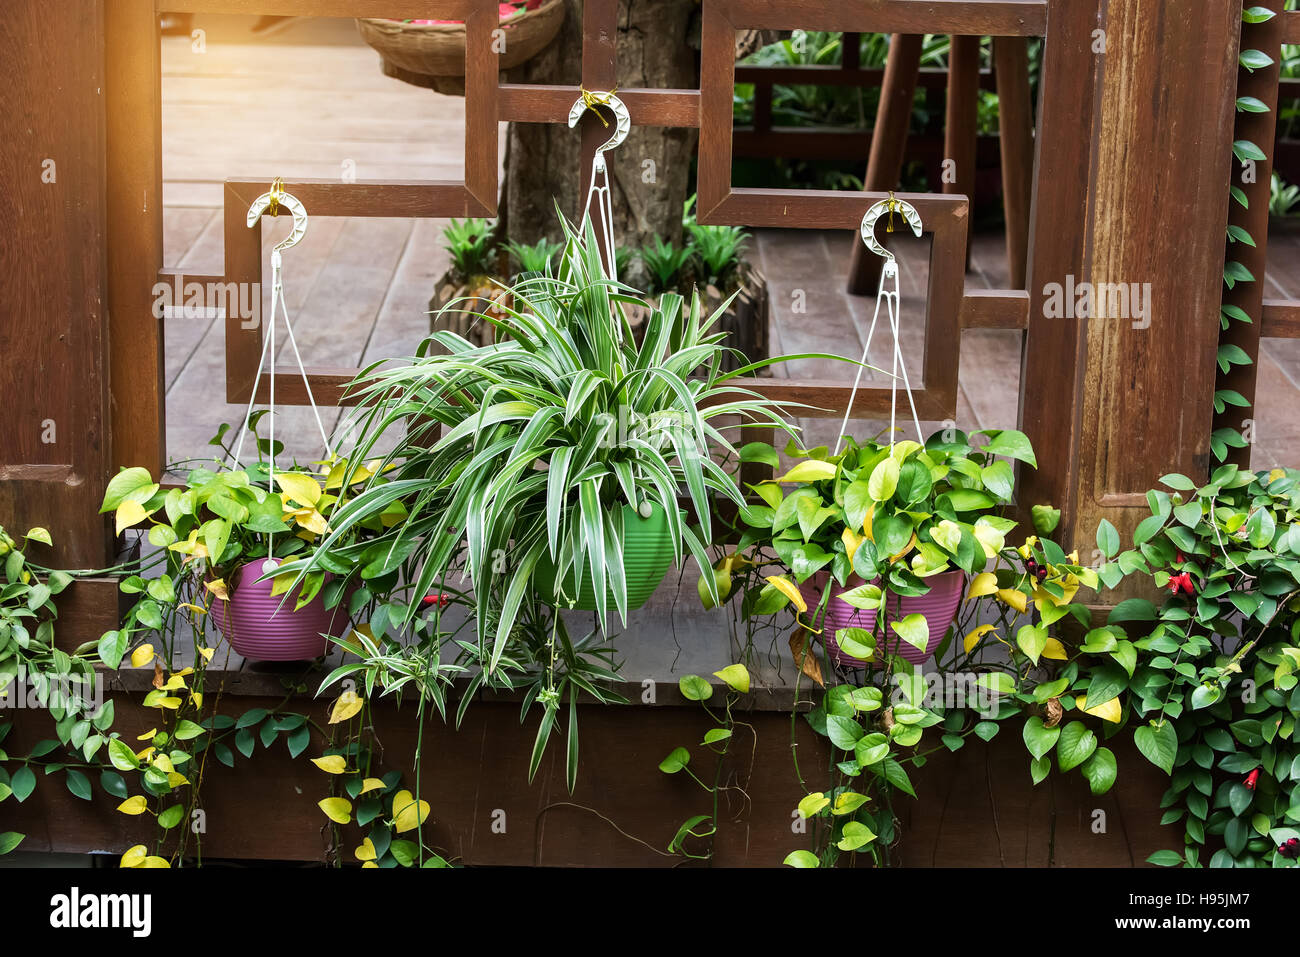 Chlorophytum Comosum and scindapsus aureus in flowerpot Stock Photo